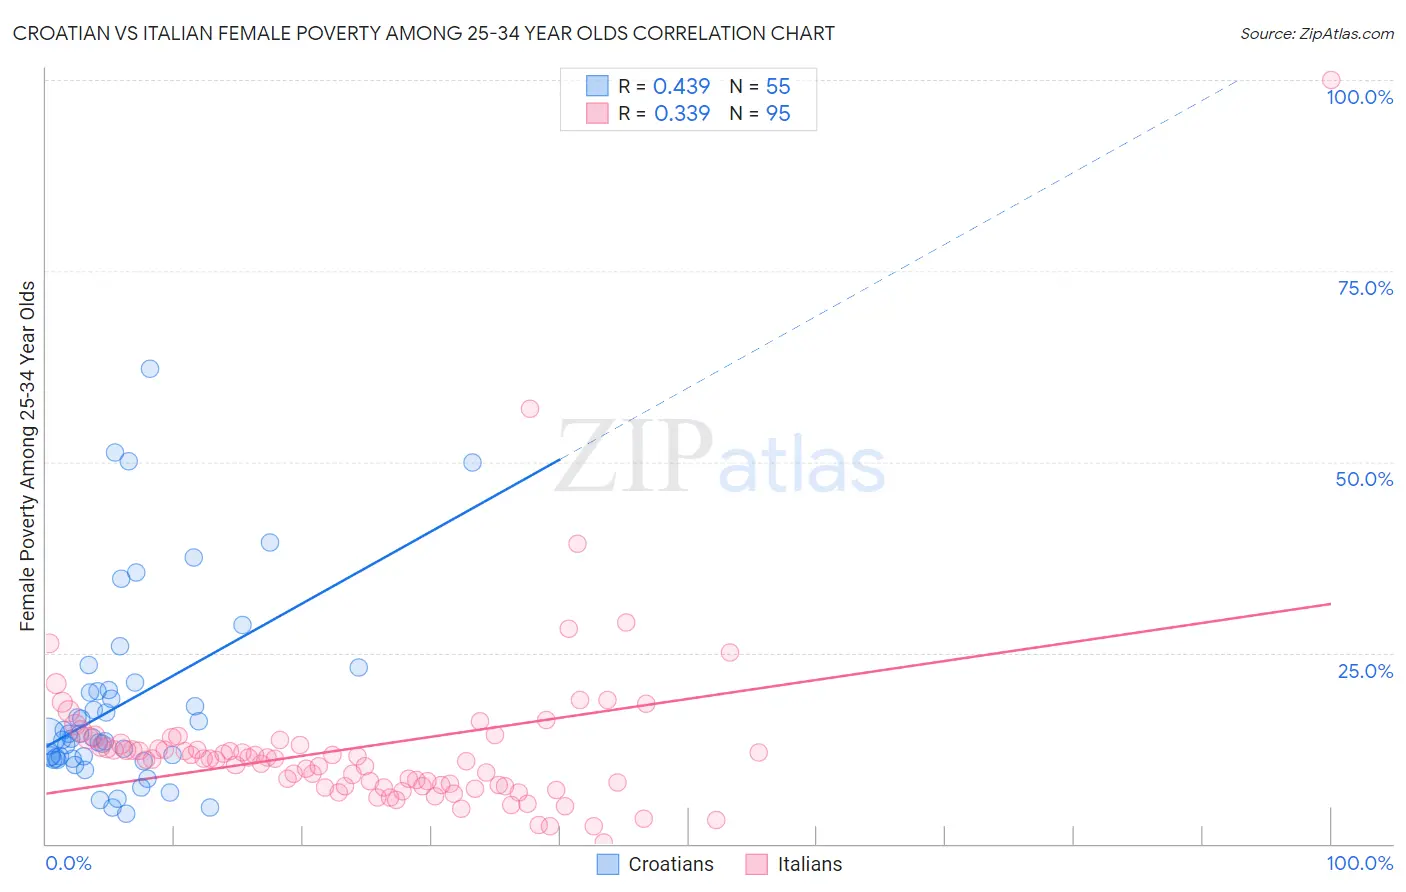 Croatian vs Italian Female Poverty Among 25-34 Year Olds